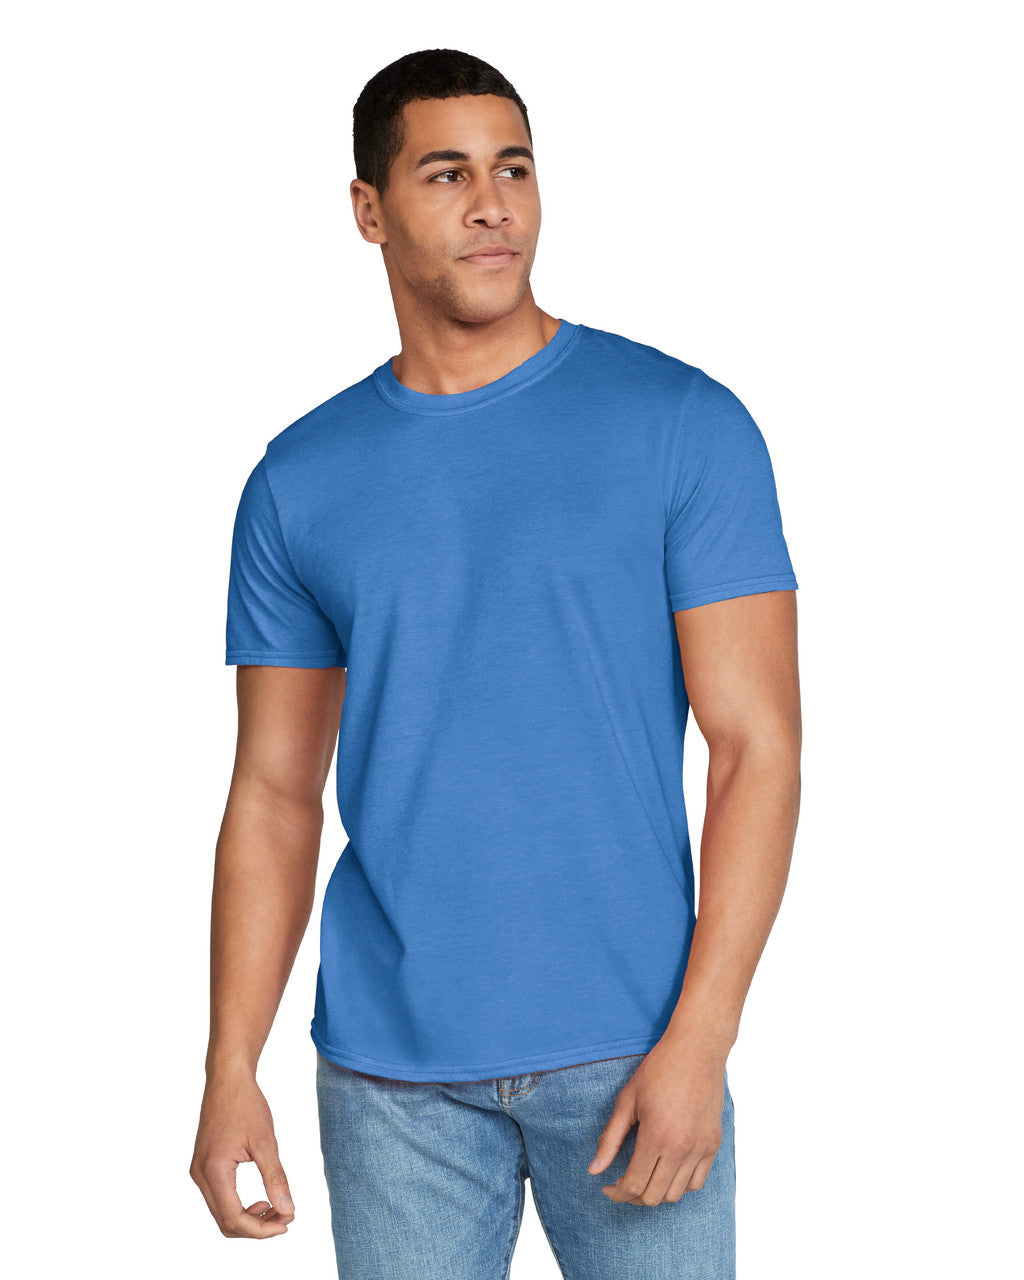 Heathered Shirt, Mens Wholesale Clothing